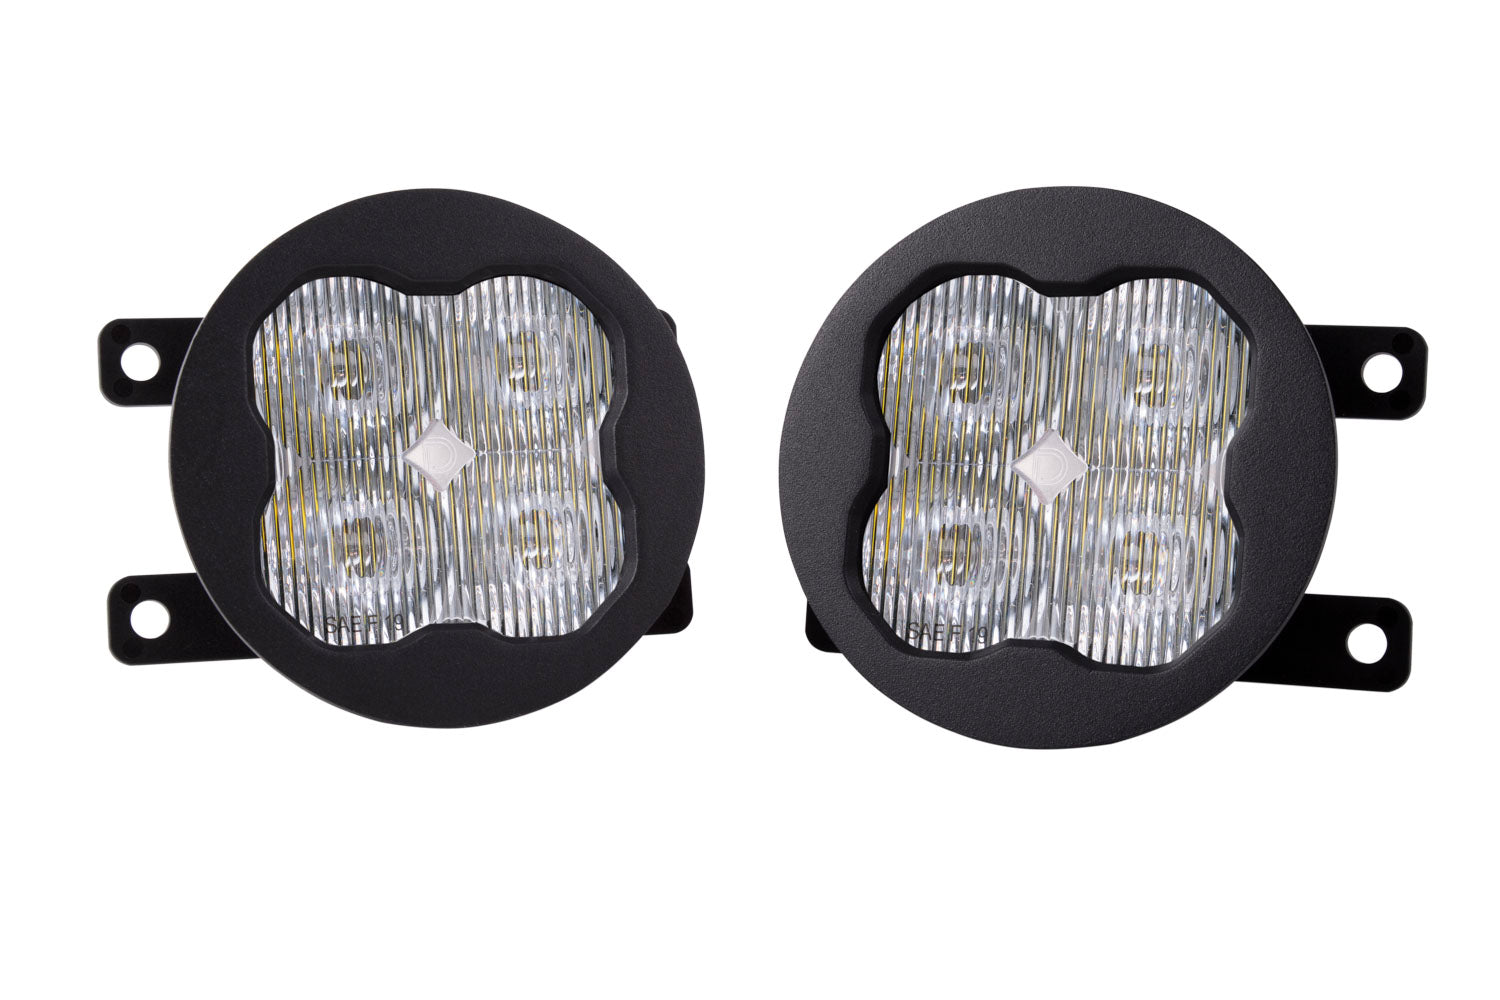 SS3 LED Fog Light Kit for 2015-2021 Subaru Impreza (w/ Eyesight Package), White SAE Fog Sport